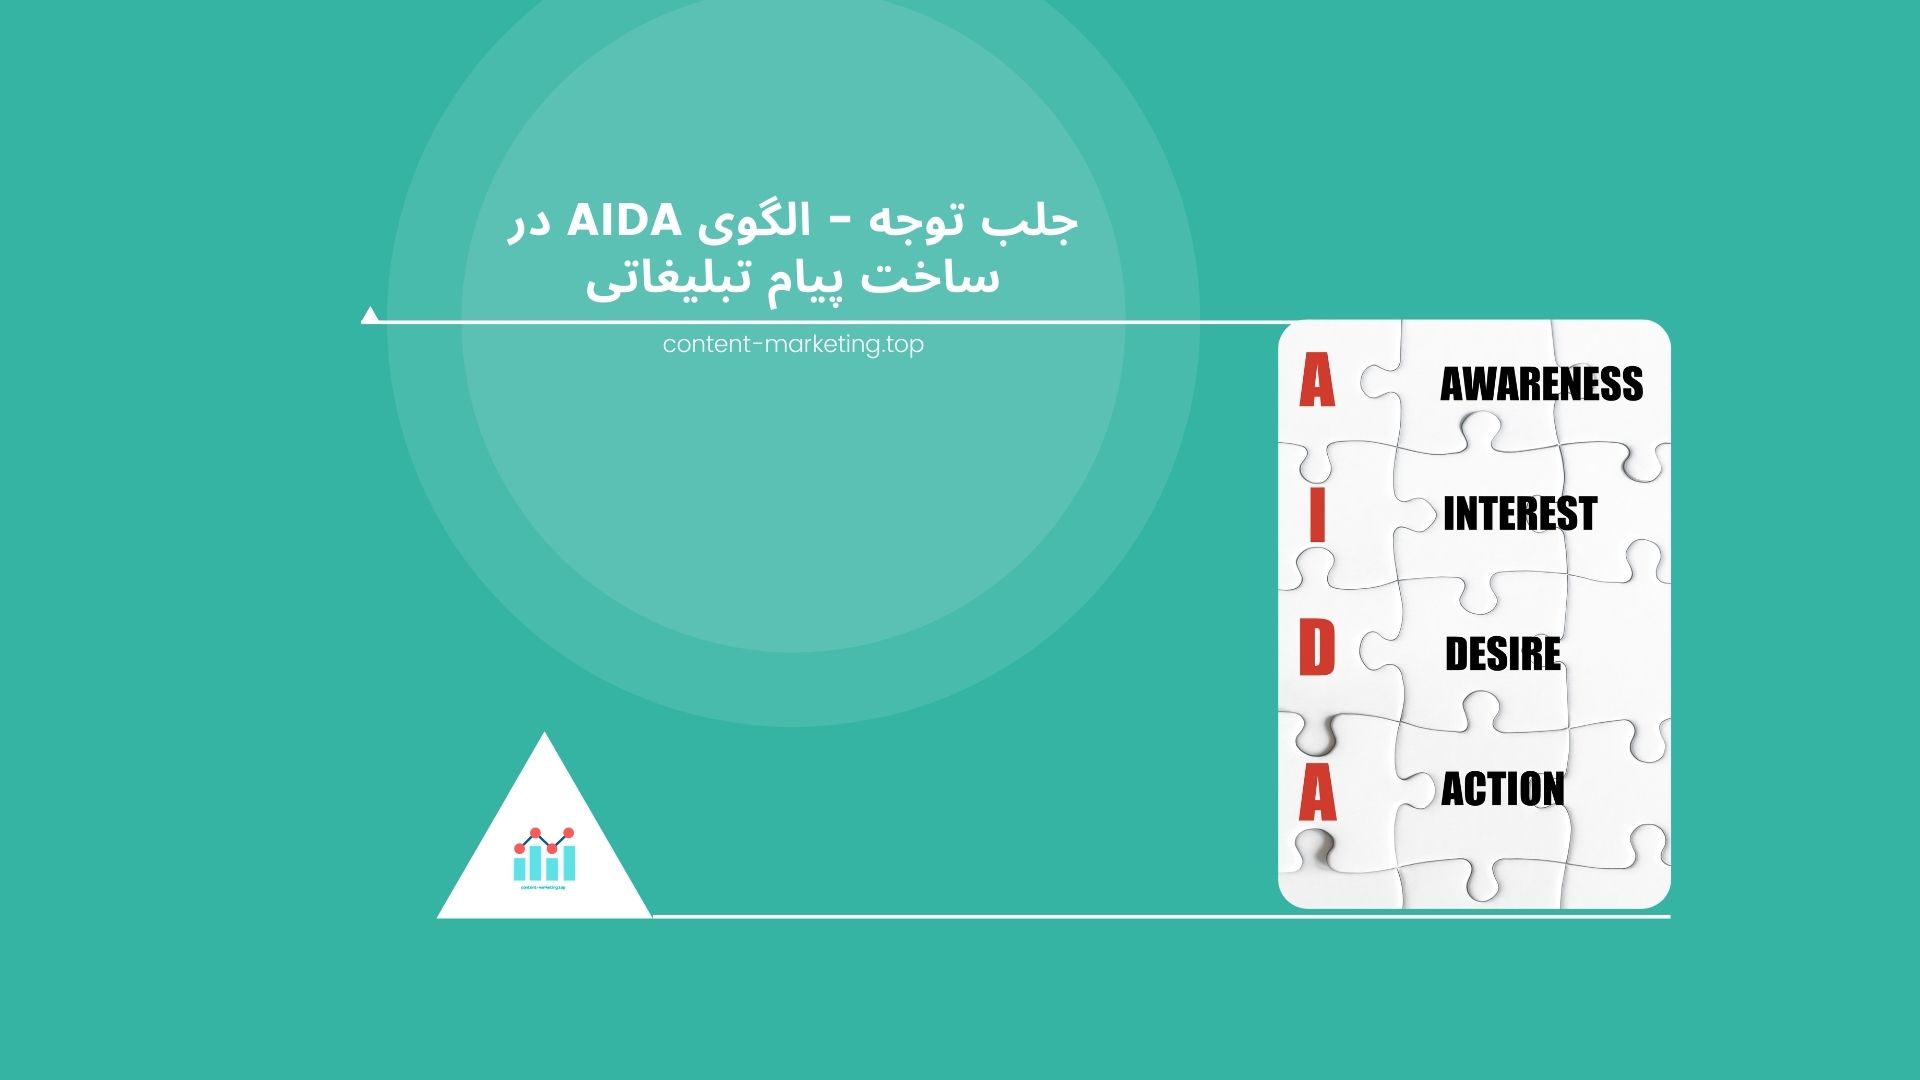 جلب توجه - الگوی aida در ساخت پیام تبلیغاتی